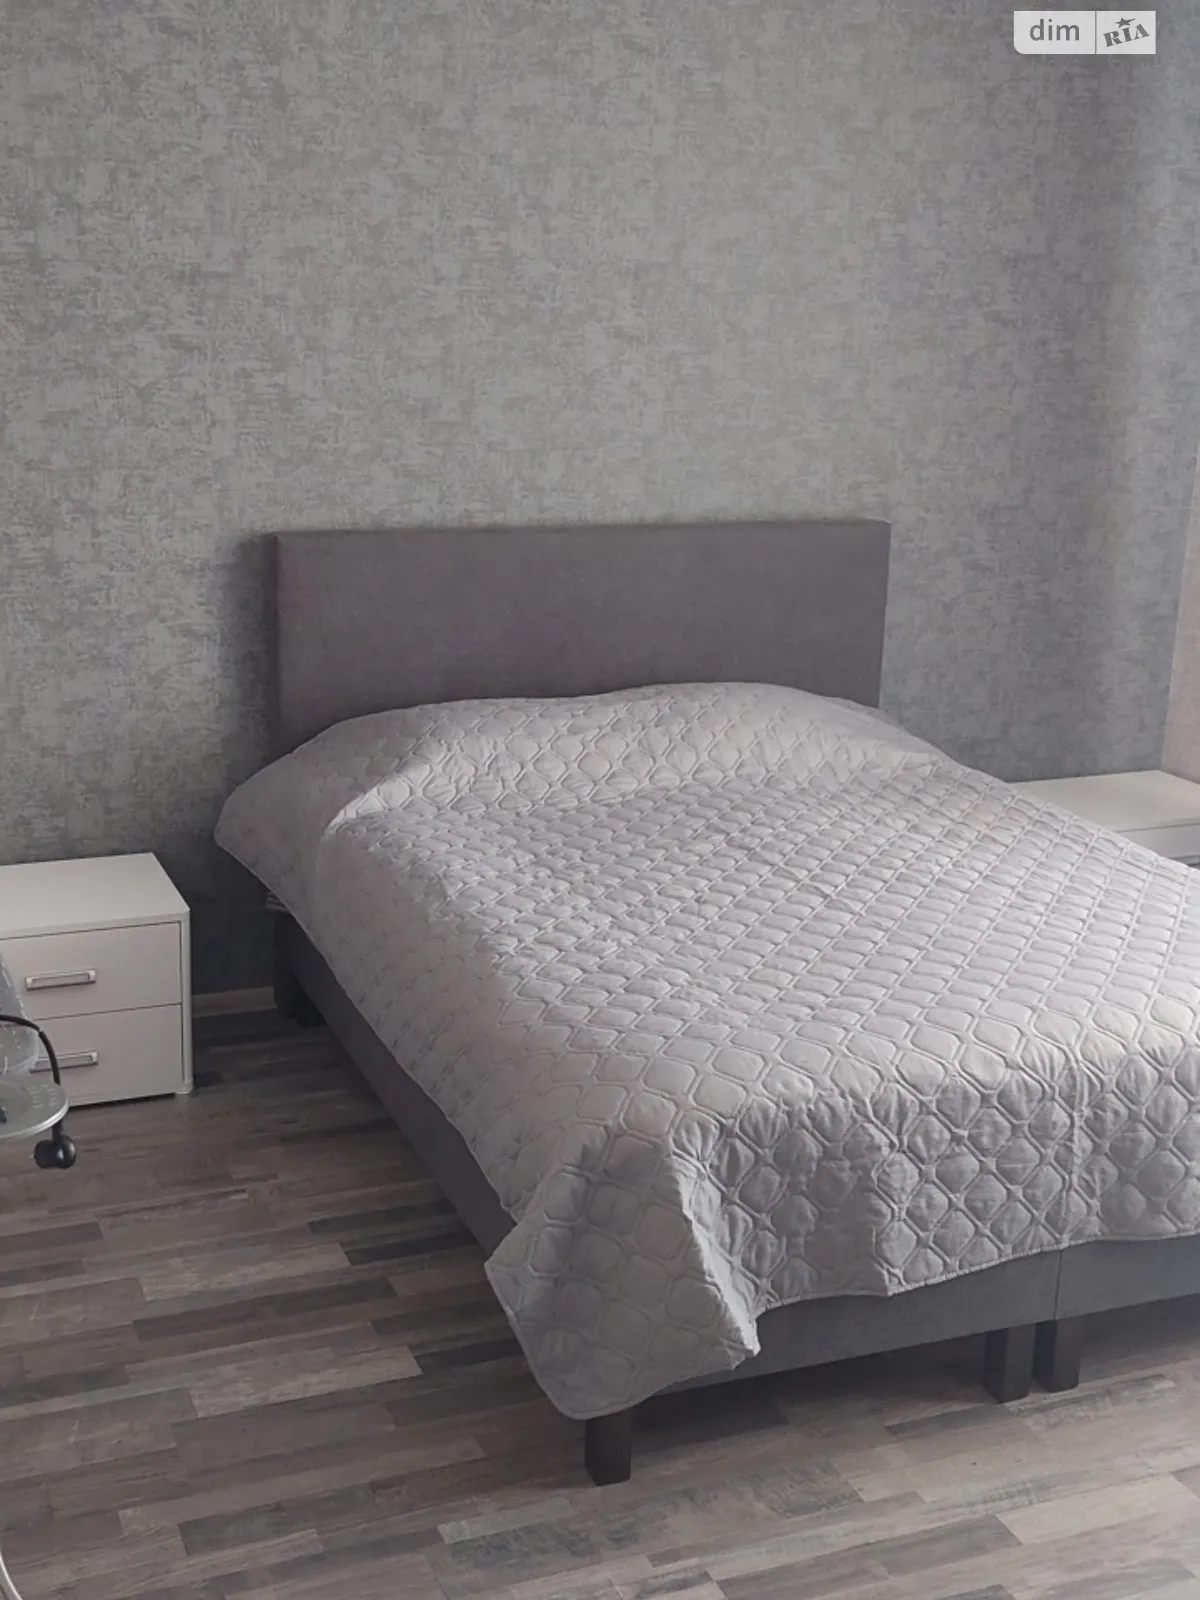 Здається в оренду 2-кімнатна квартира у Хмельницькому, цена: 1000 грн - фото 1